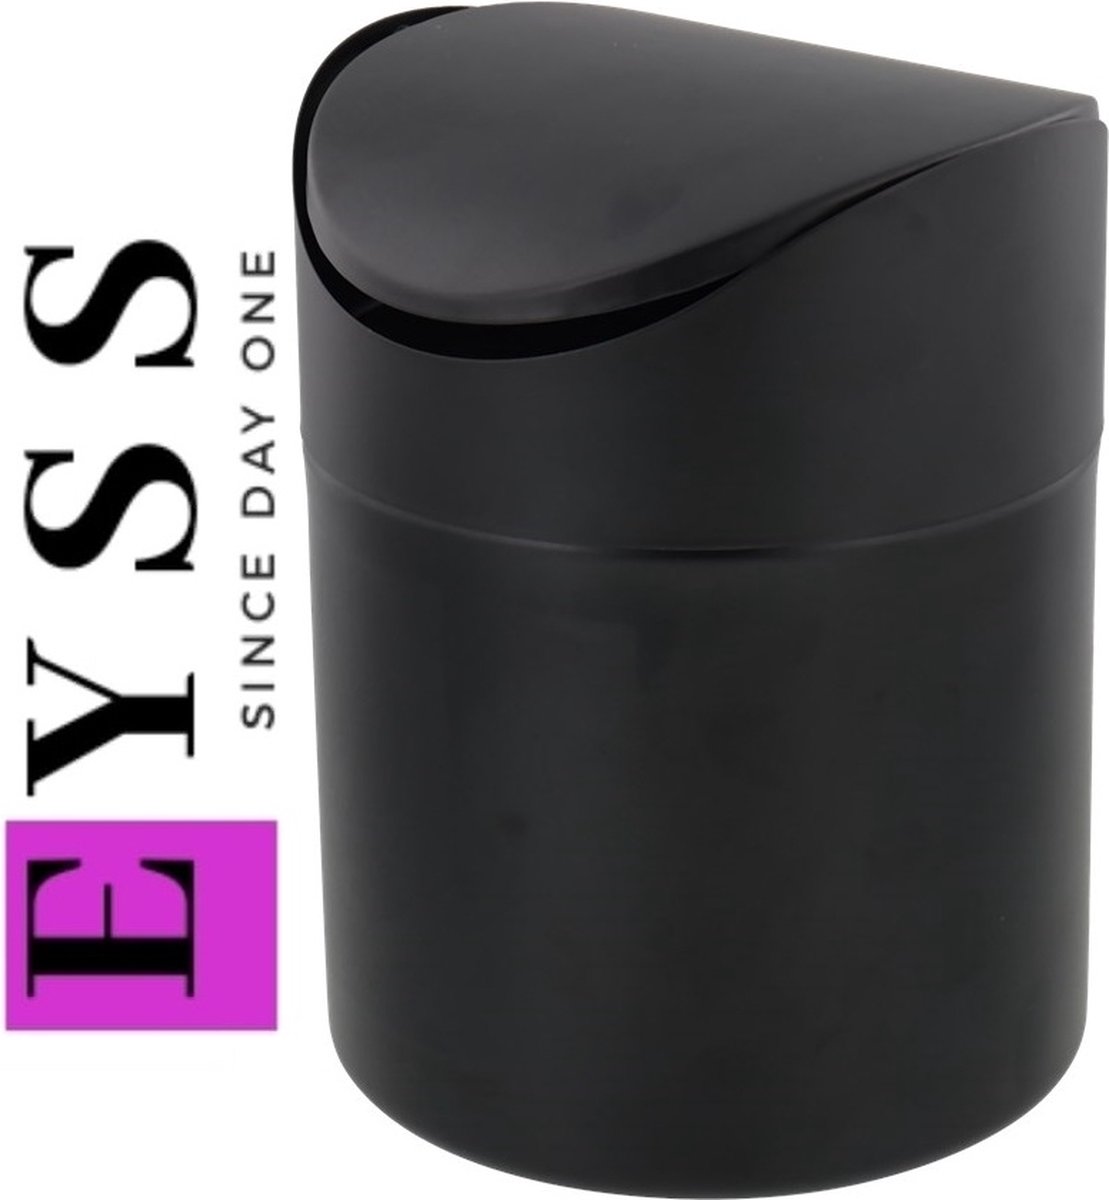 EYSS / Stijlvolle Tafelafvalbakje 1.4 liter / Matt zwart / Poubelle de table / Keuken afvalbak / Aanrecht prullenbak / Home Design / A